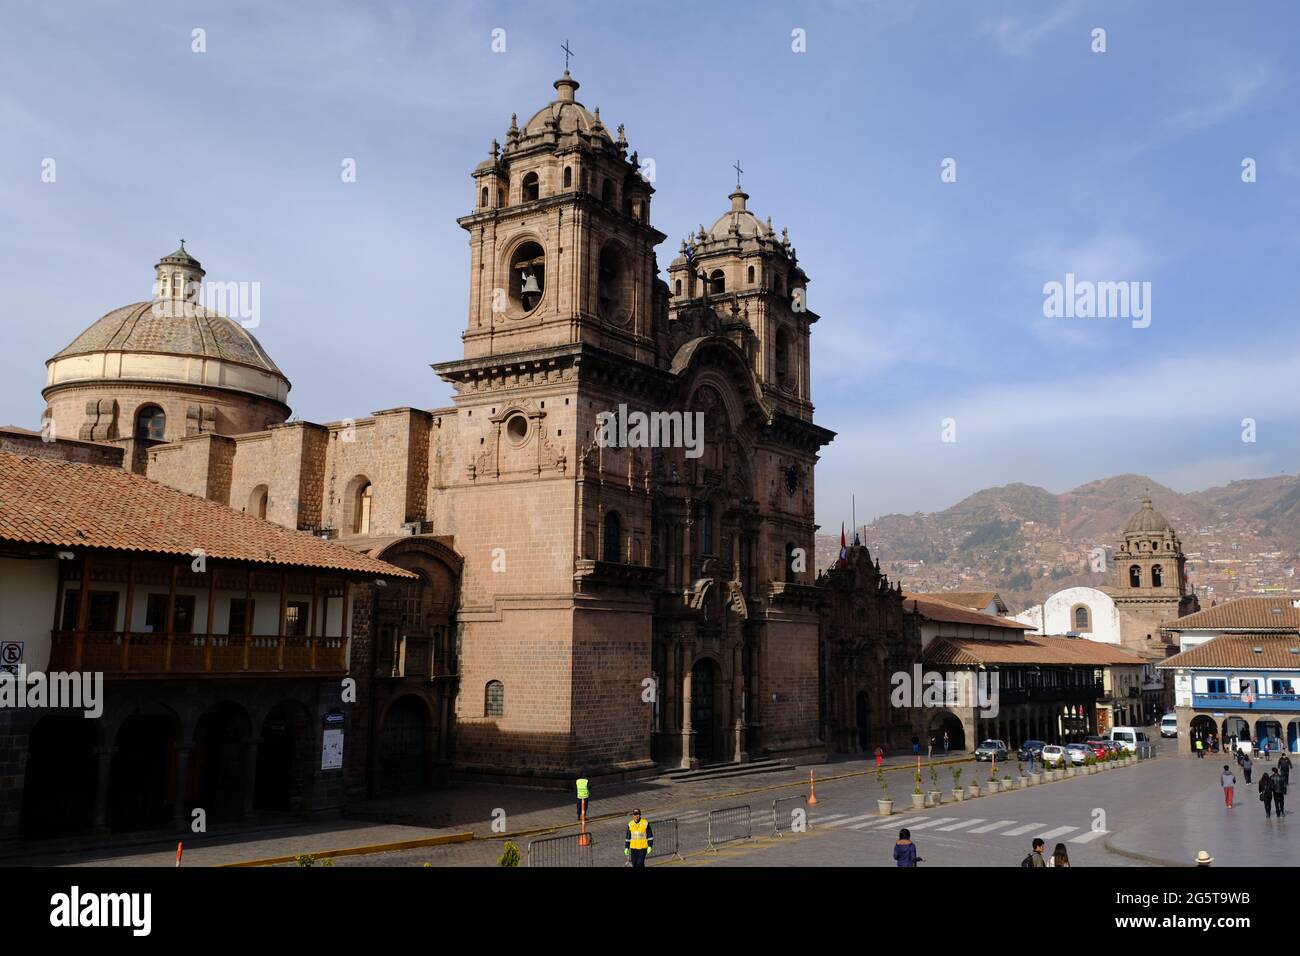 Perù Cusco - Iglesia de la Compania de Jesus - Chiesa della Società di Gesù paesaggio urbano Foto Stock